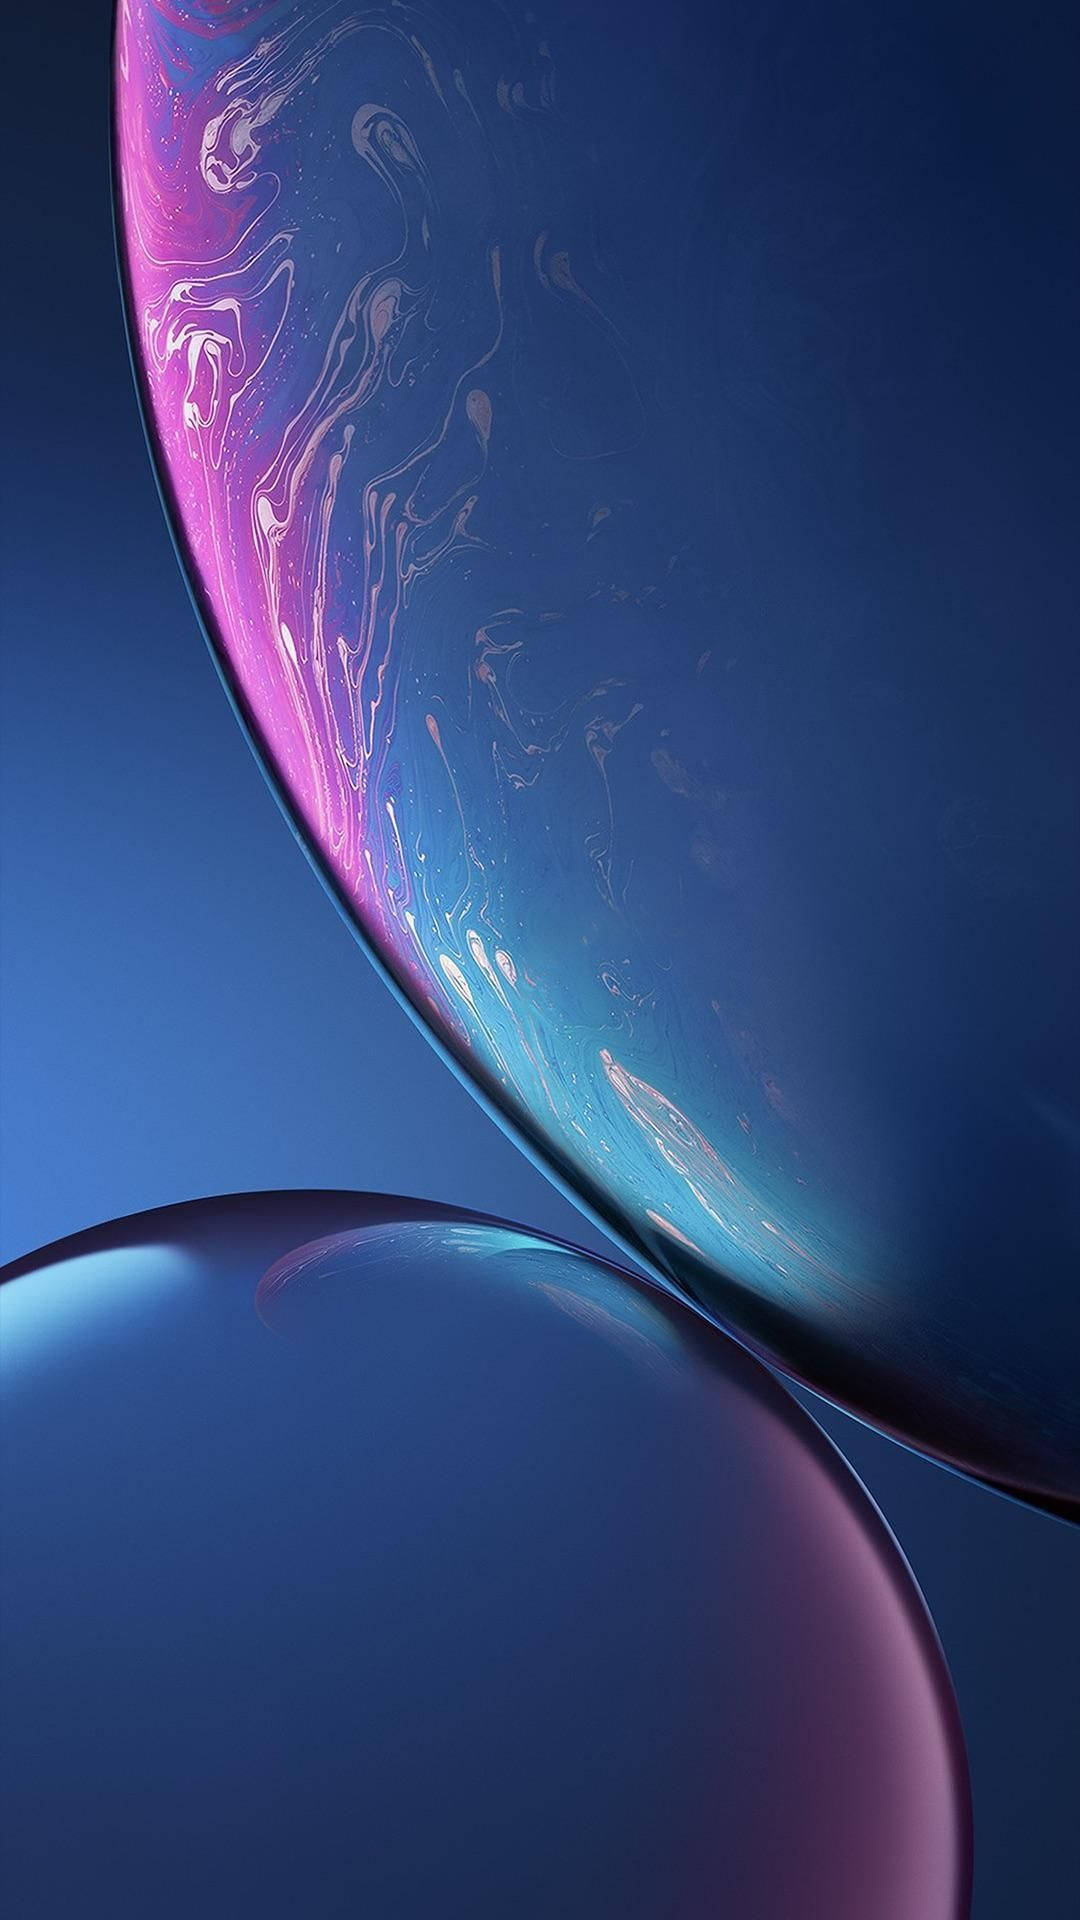 Liquid Motion on an iPhone XR Wallpaper